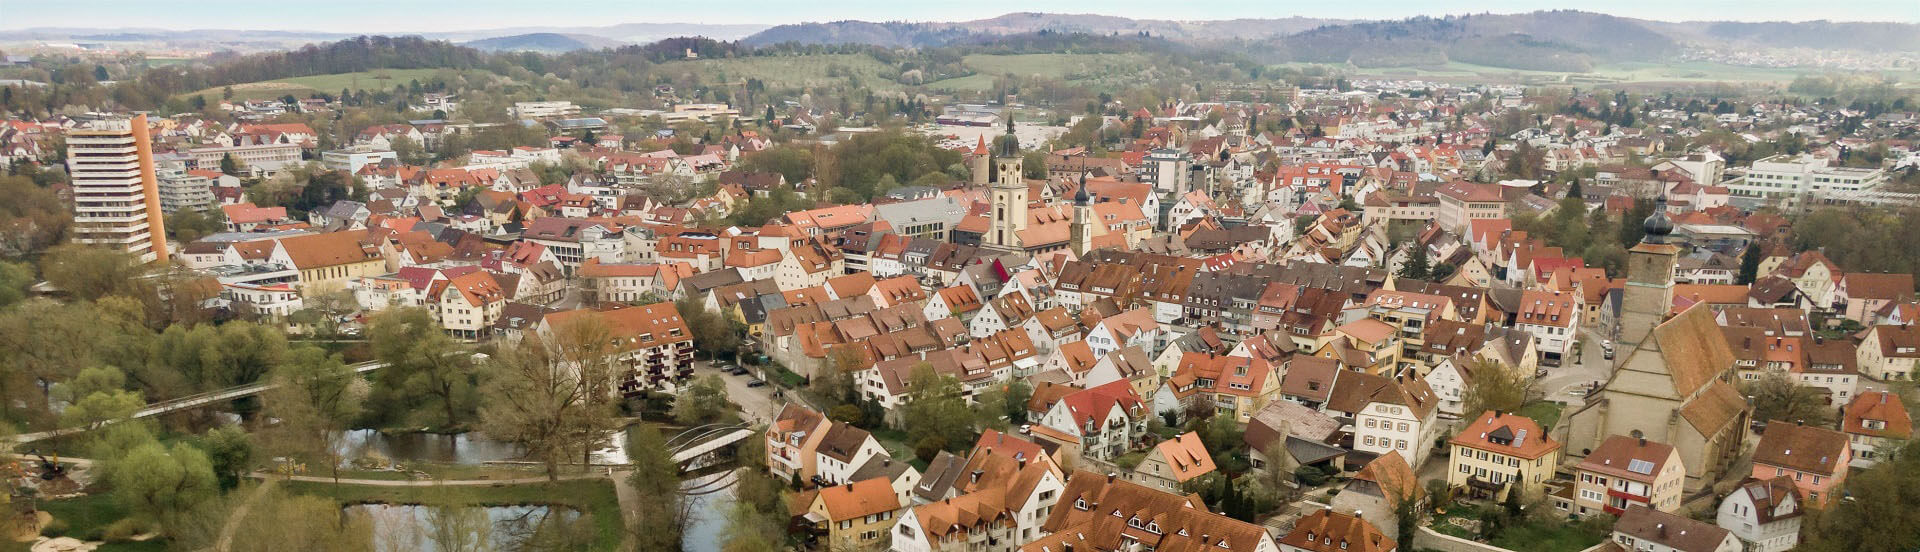 Luftbild von Crailsheim zum zum Blogartikel "Danke Schwäbisch Hall"